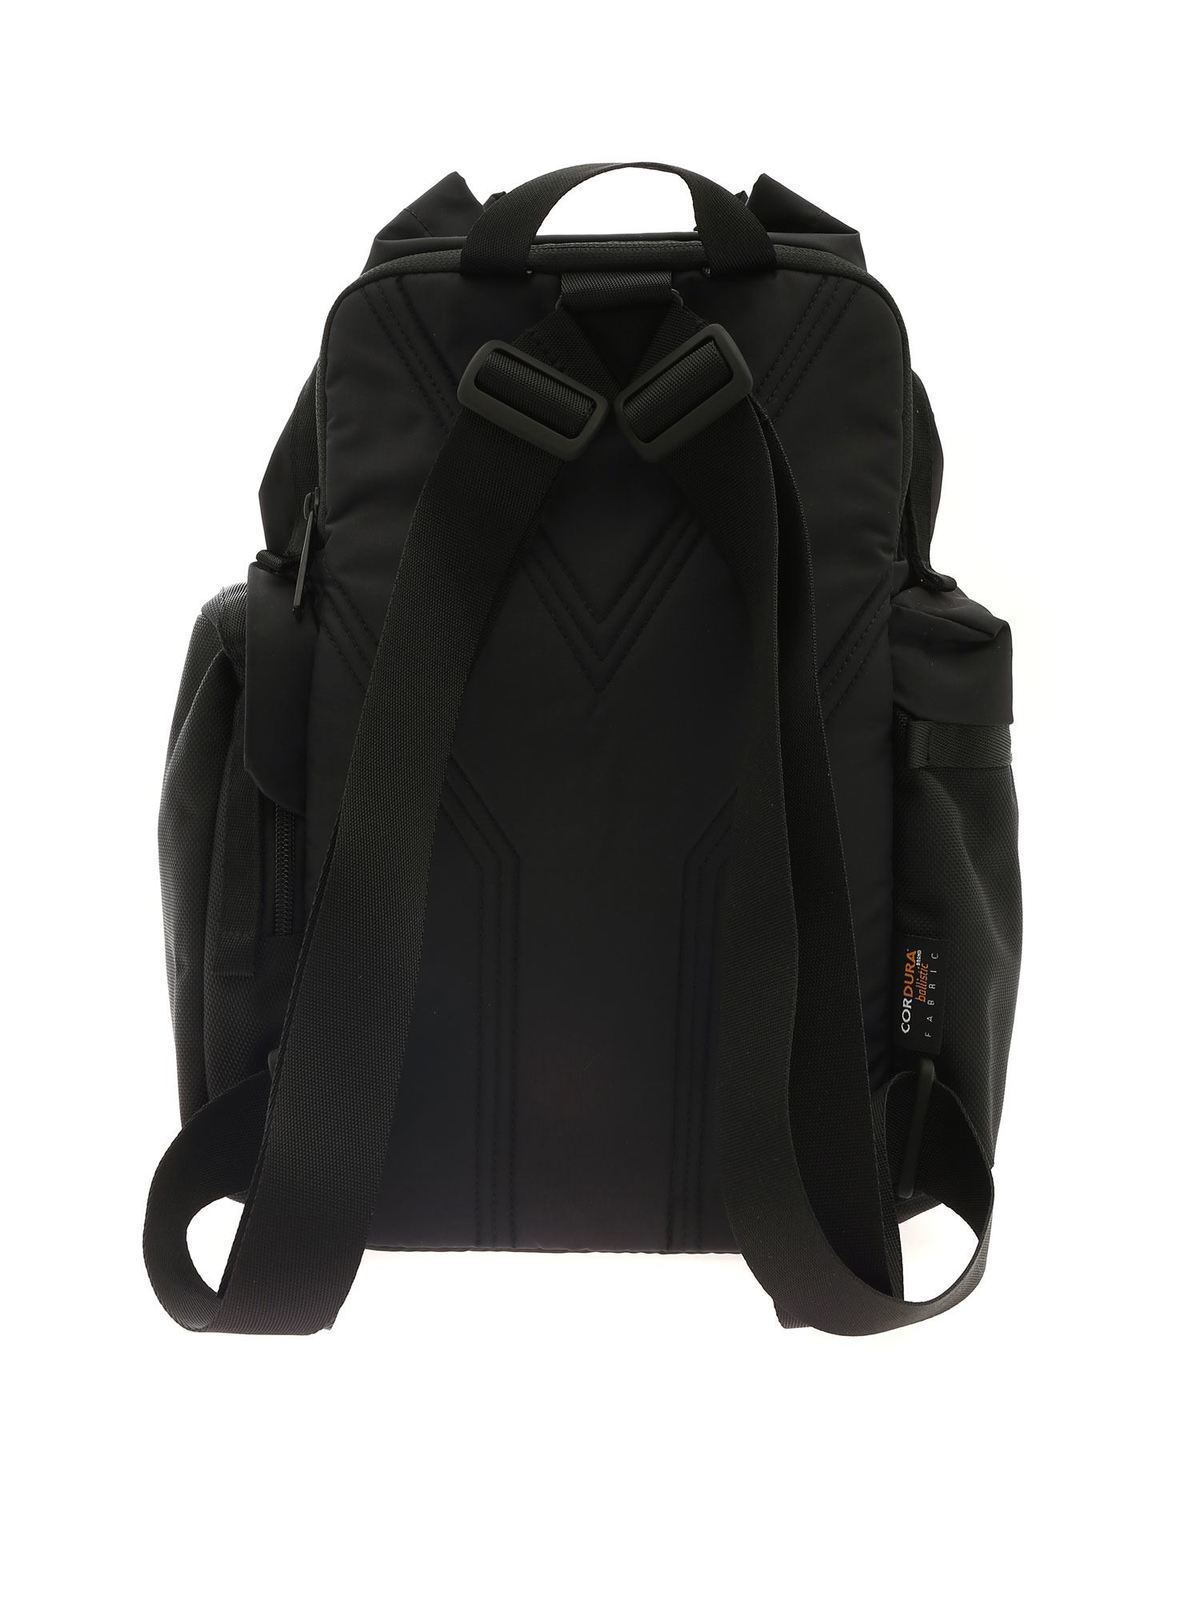 y3 black backpack